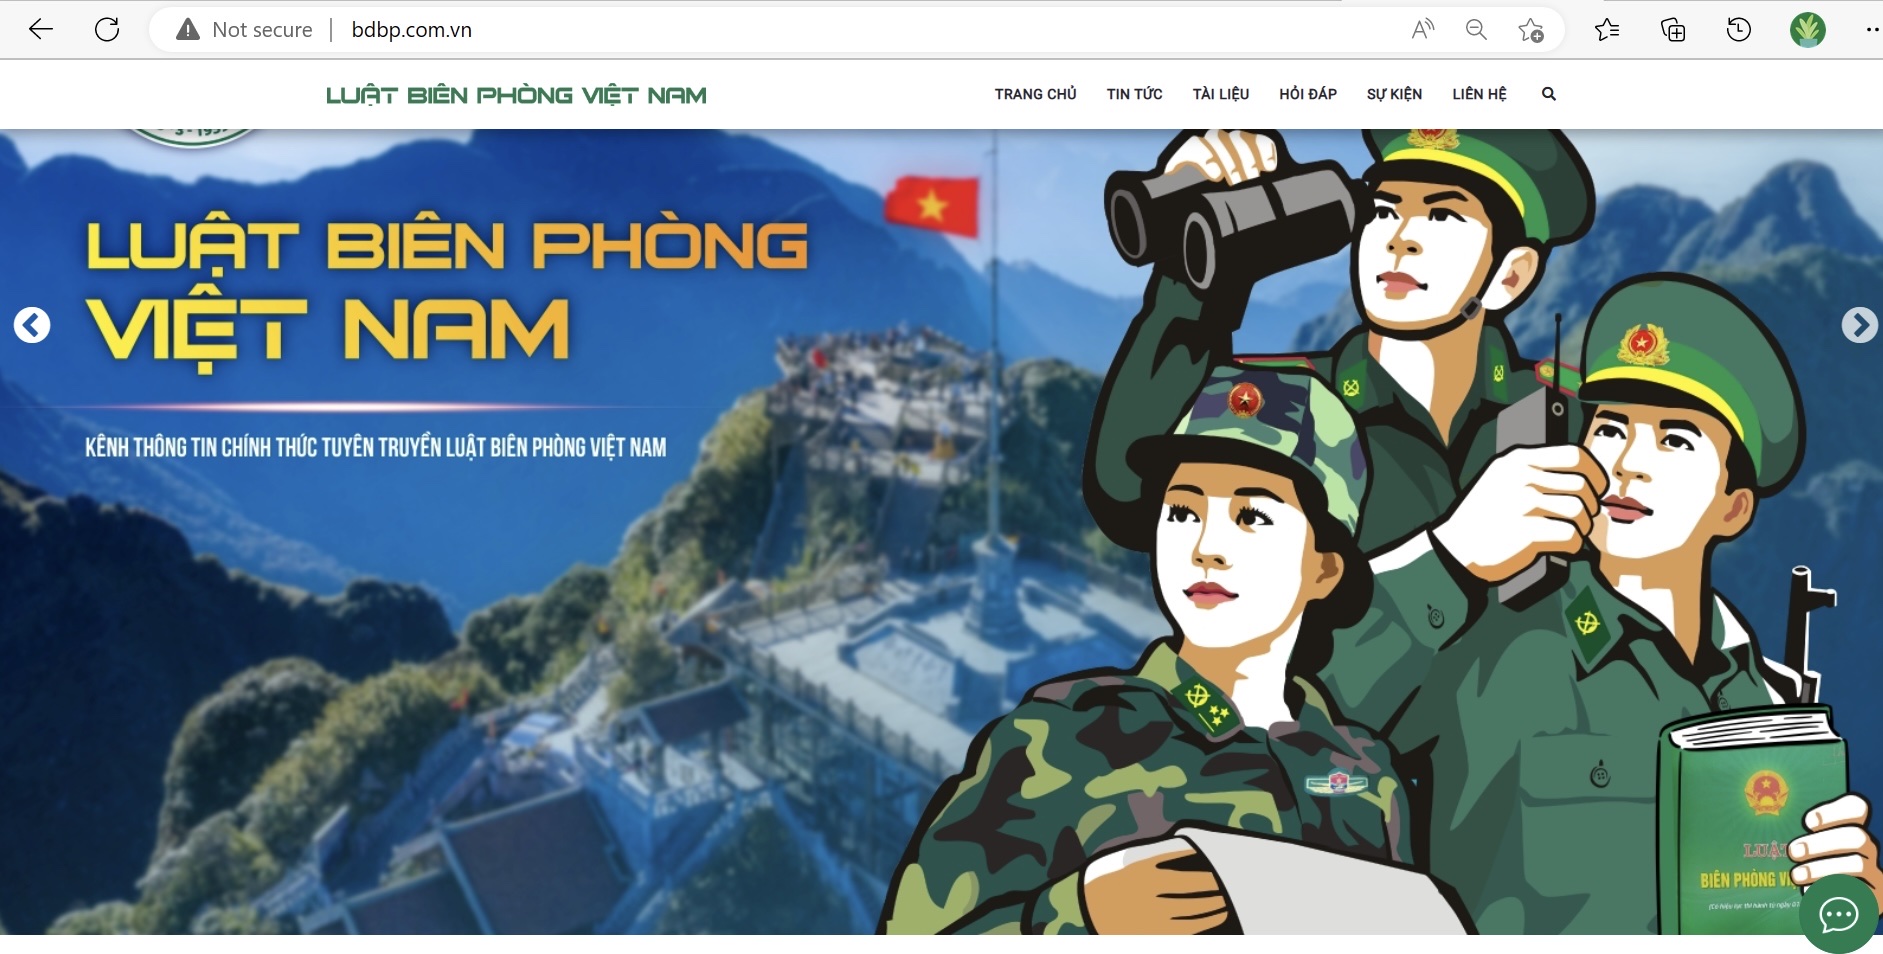 Tuyên truyền Luật Biên phòng Việt Nam trên không gian số hiện đại